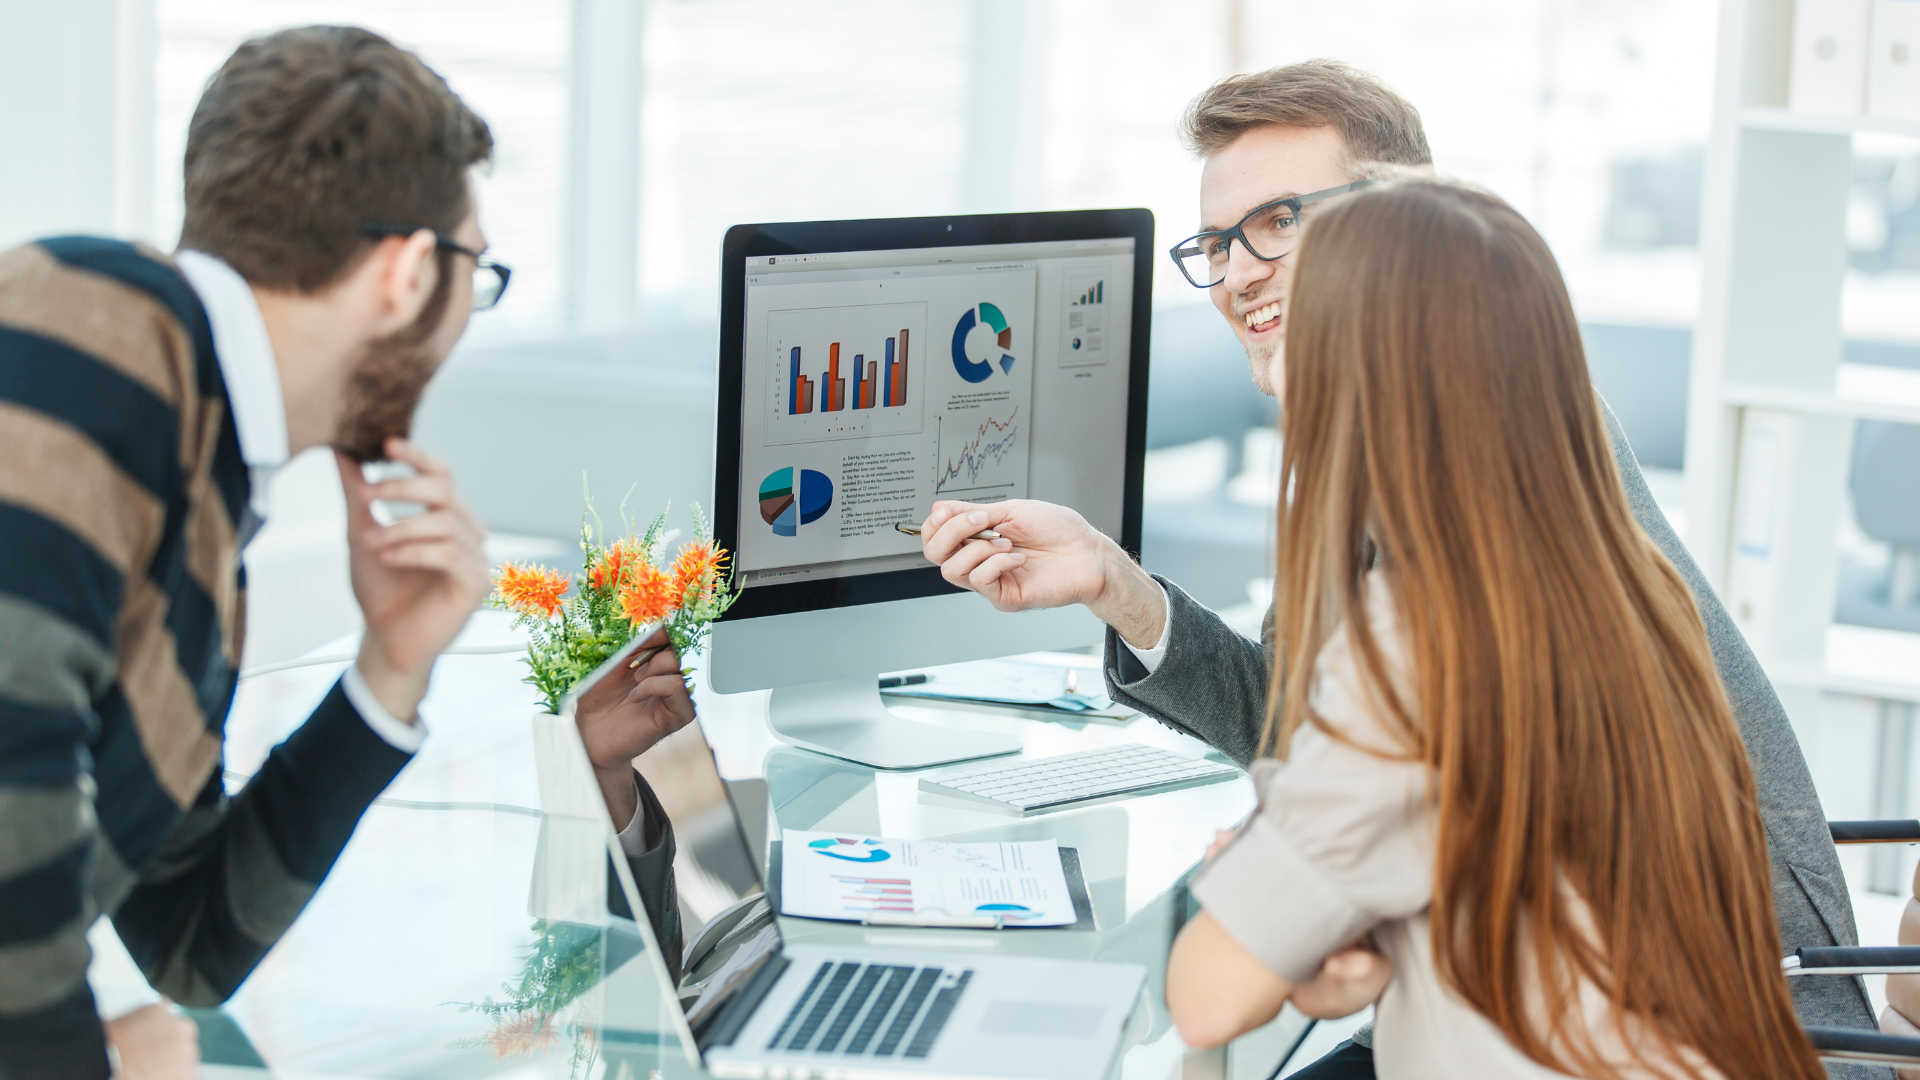 Three marketing professionals looking at charts and data